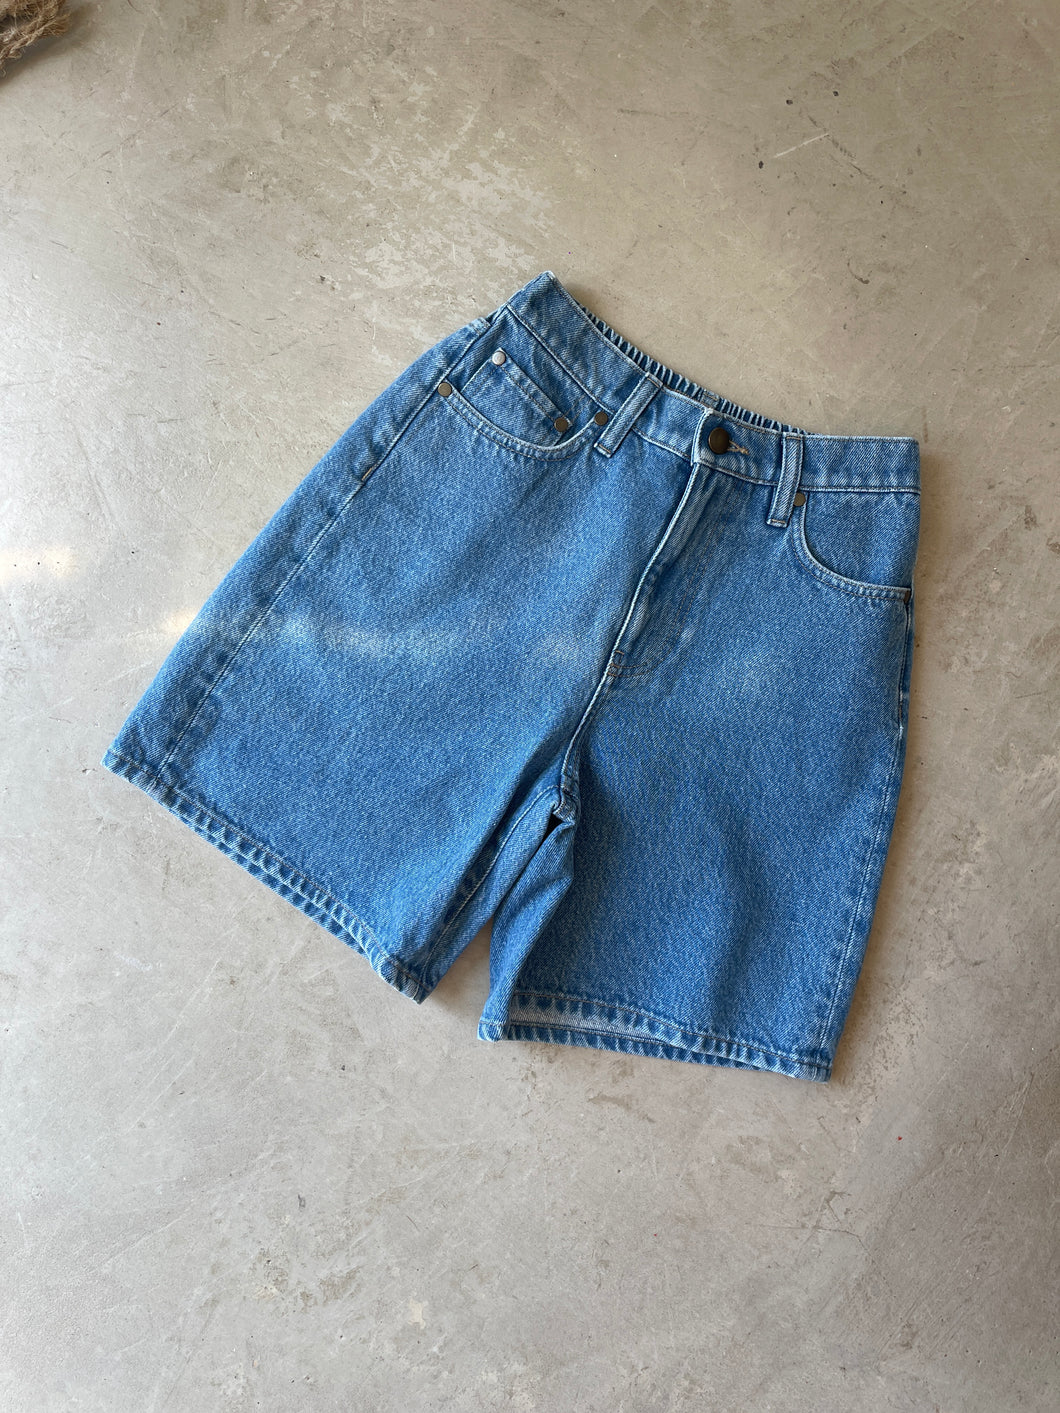 The Simple Folk Denim Shorts